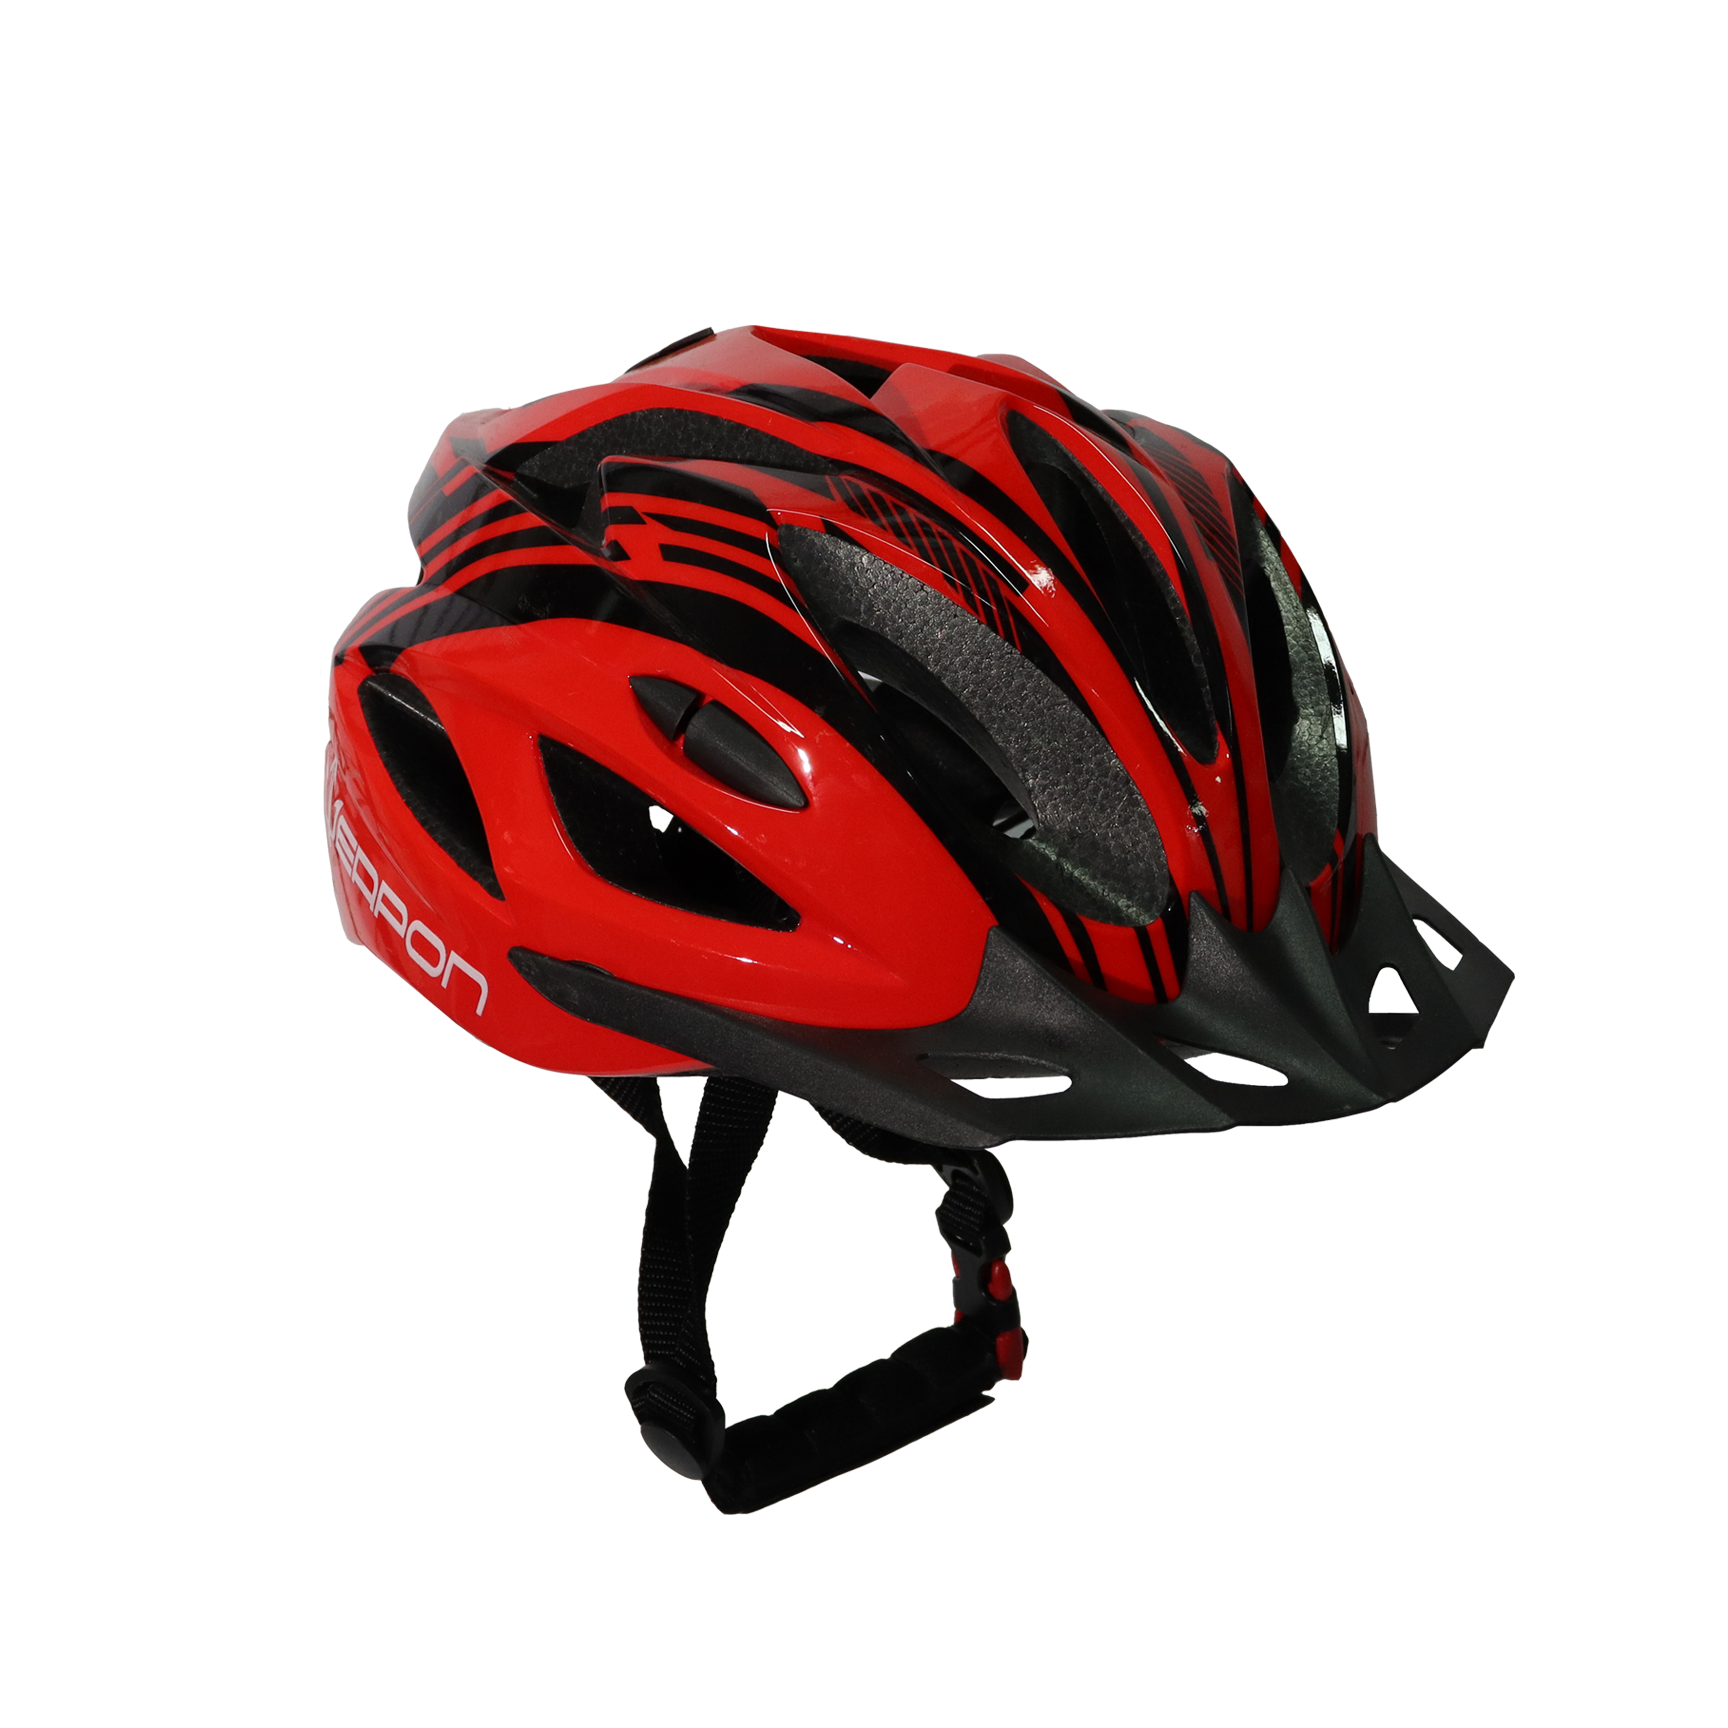 Ace Helmet – Weapon Bike